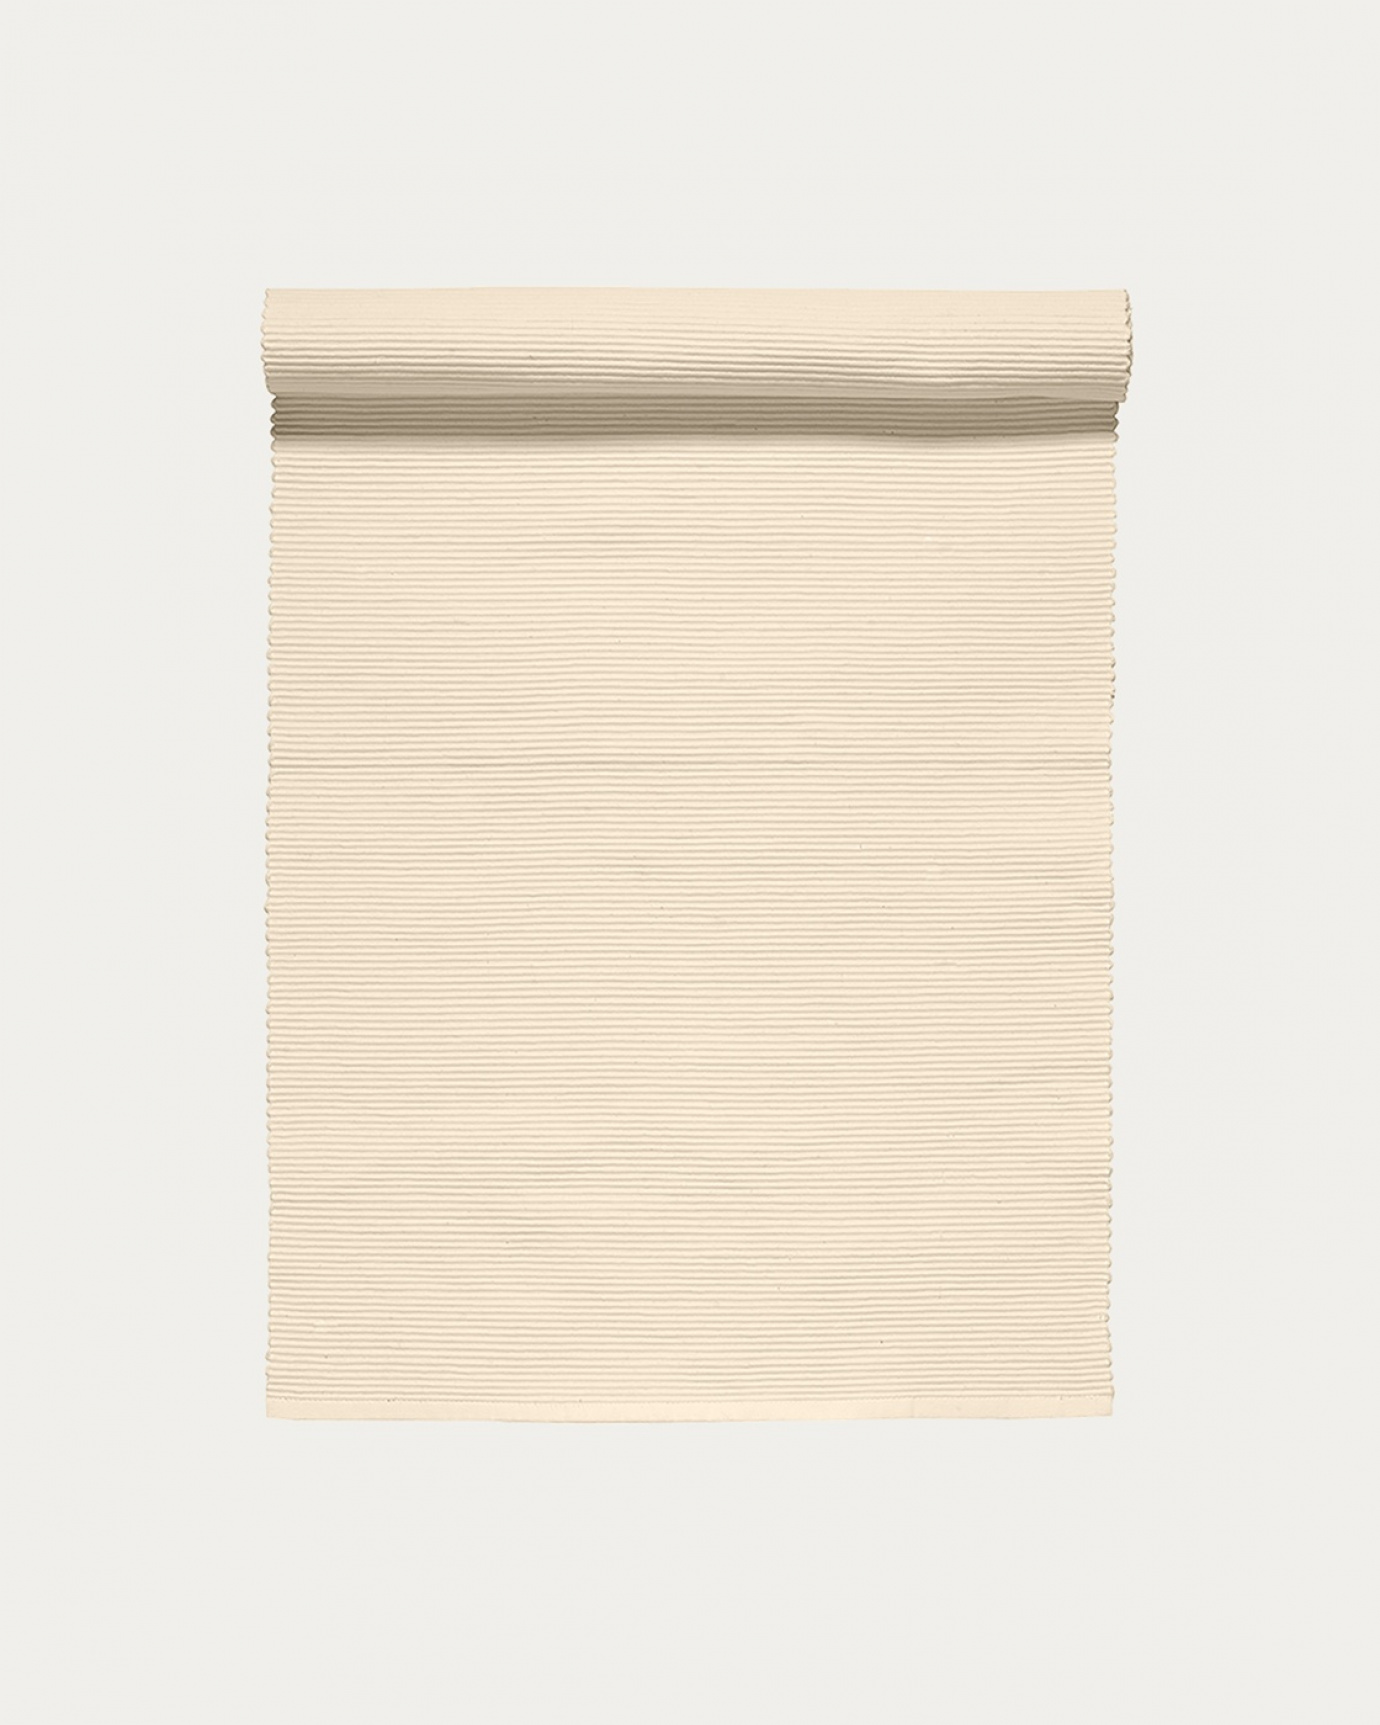 Image du produit chemin de table UNI creme en coton doux de qualité côtelée de LINUM DESIGN. Taille 45 x 150 cm.